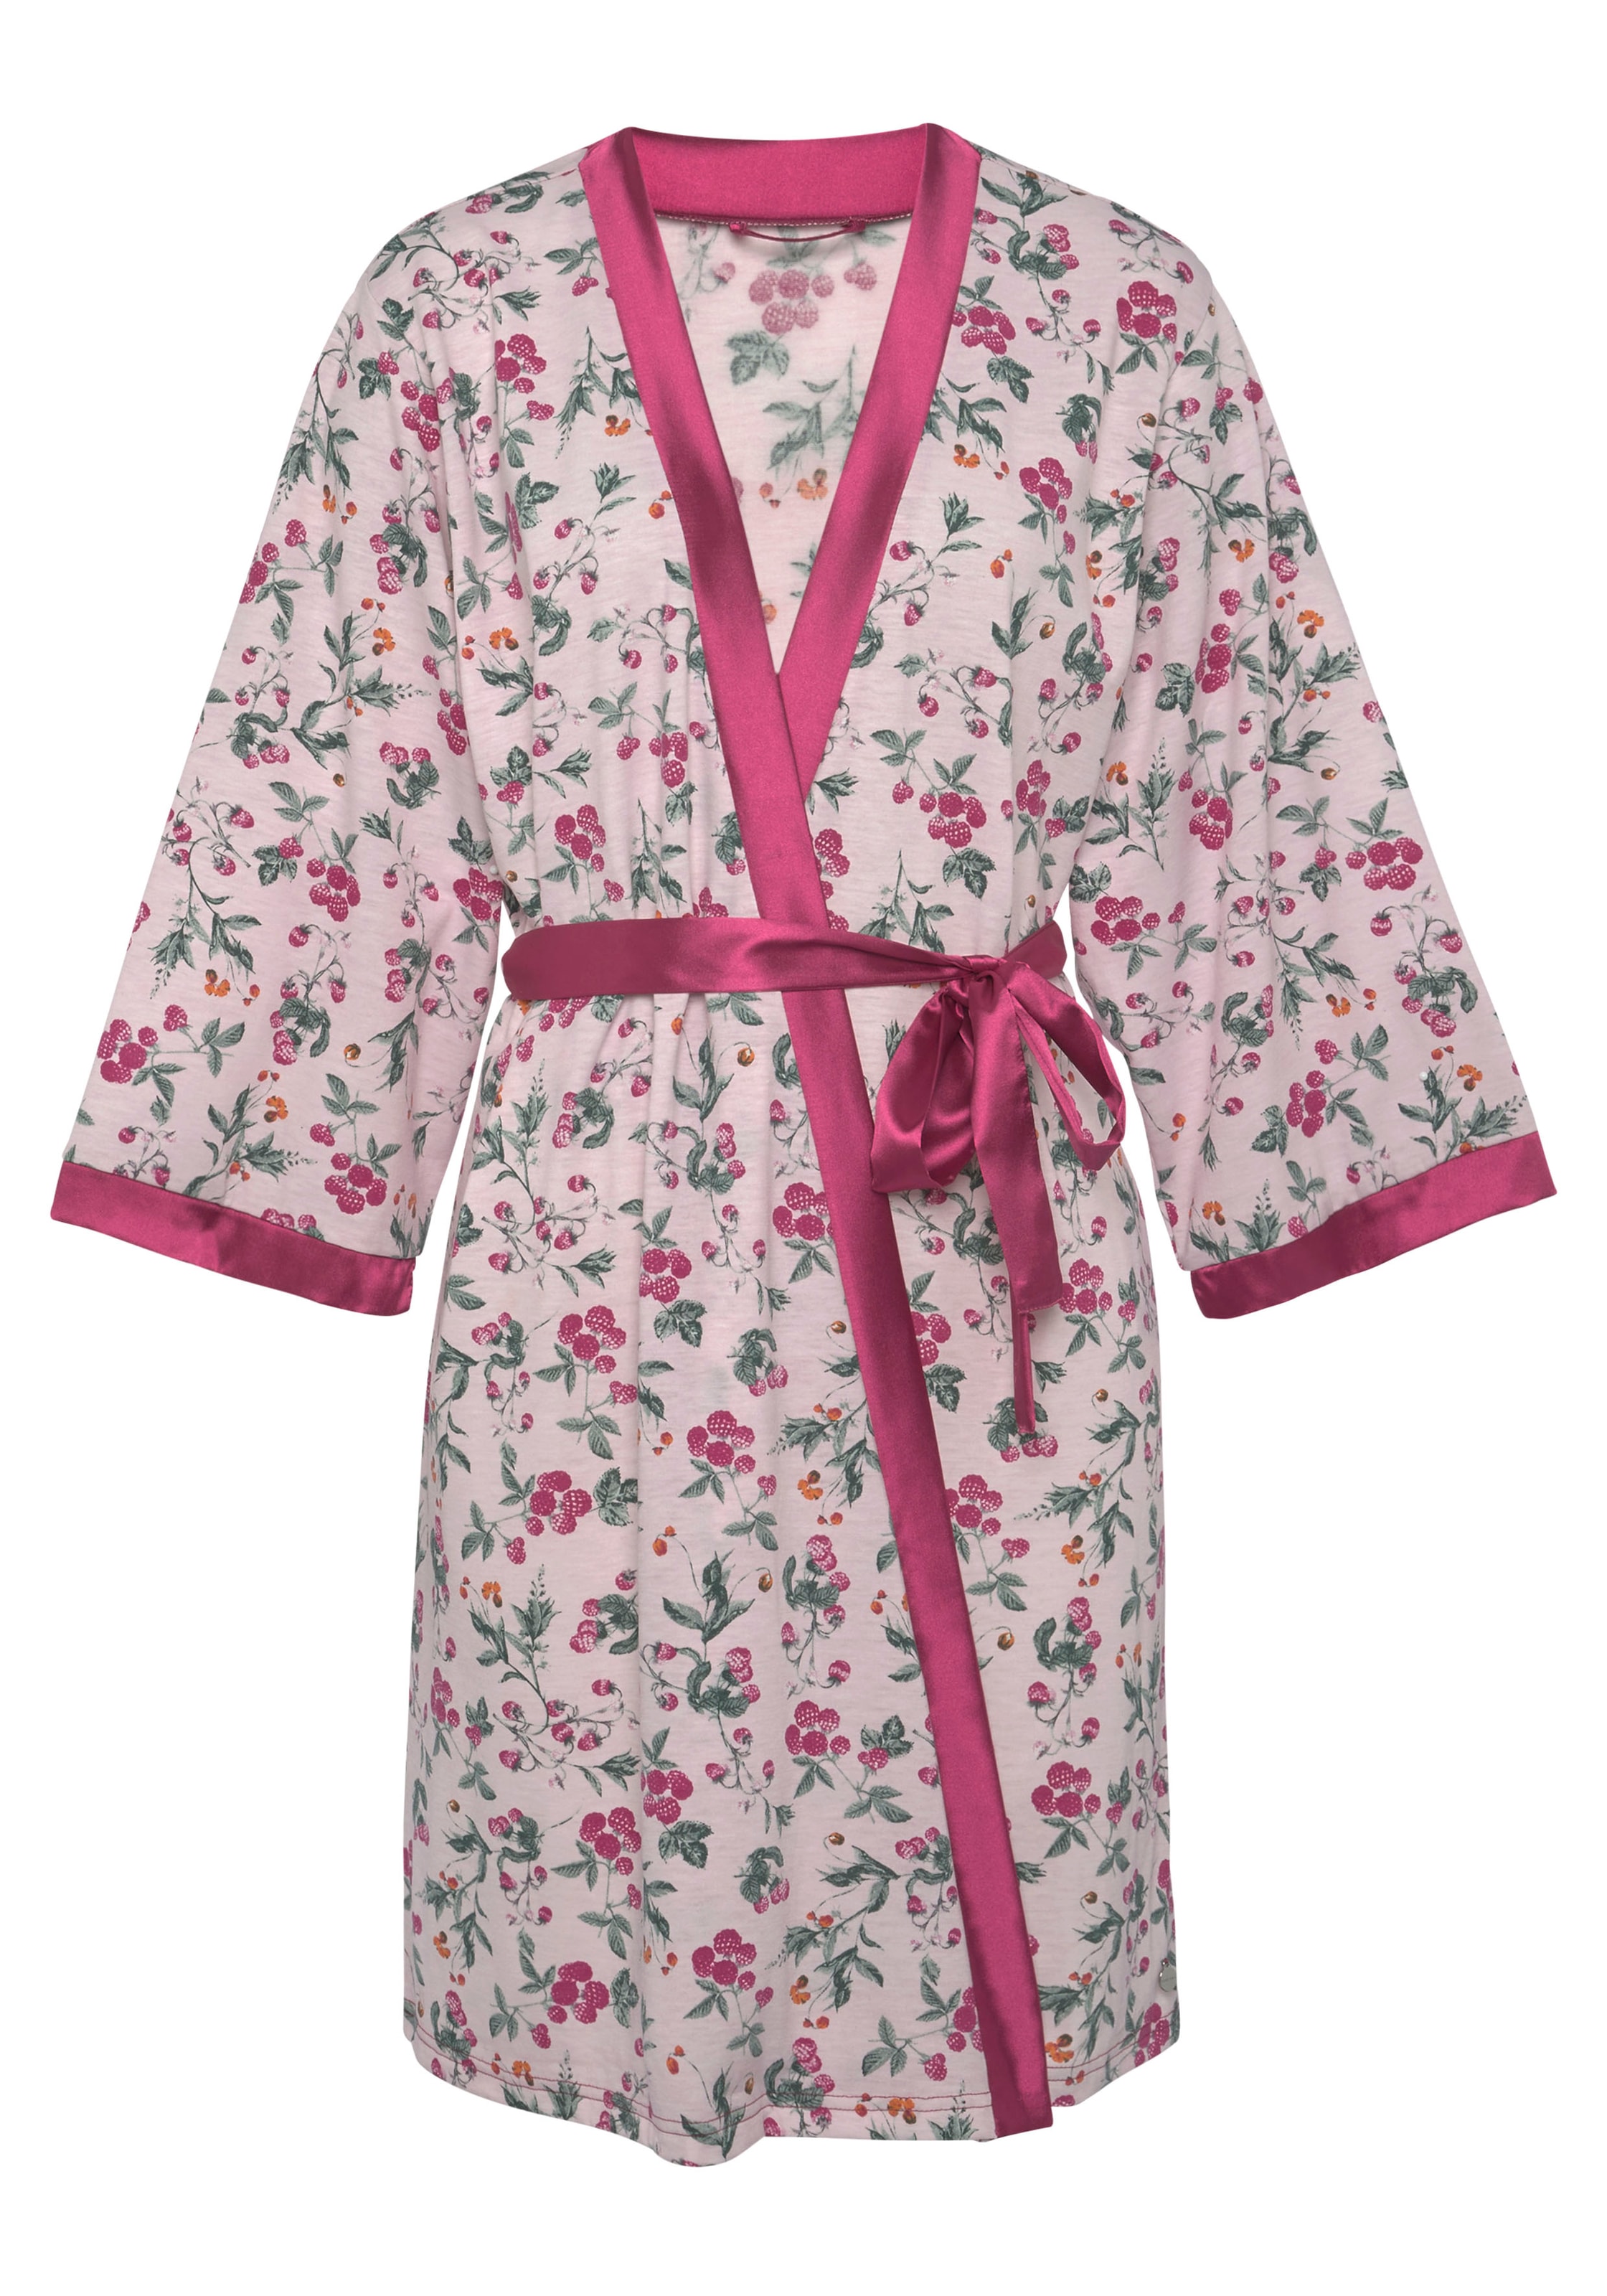 Extrem günstige Qualität LASCANA Kimono & Unterwäsche online kaufen | LASCANA Lingerie » Bademode